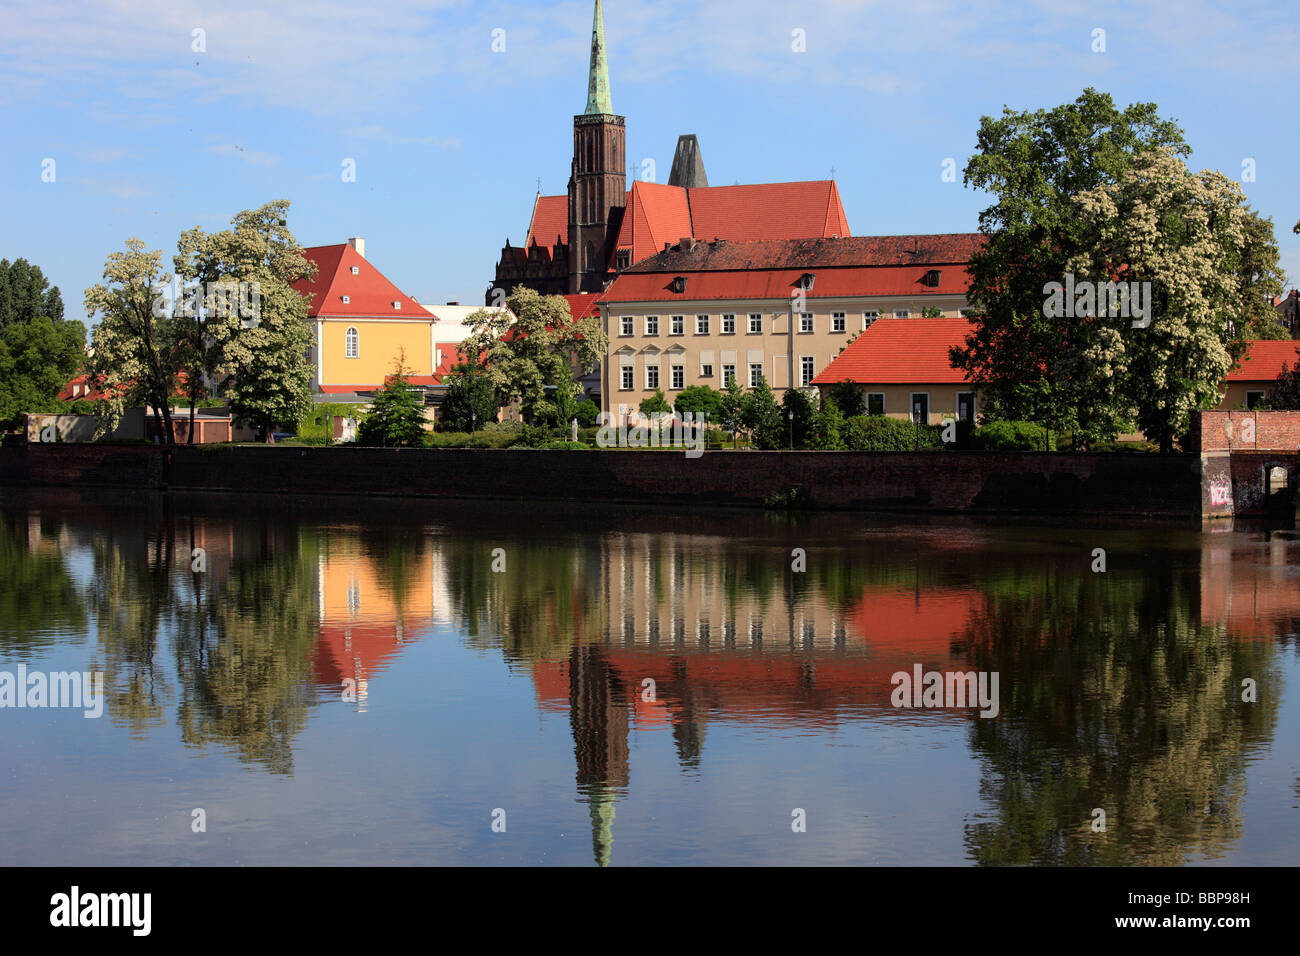 L'île de la cathédrale de Wroclaw Pologne Oder Banque D'Images